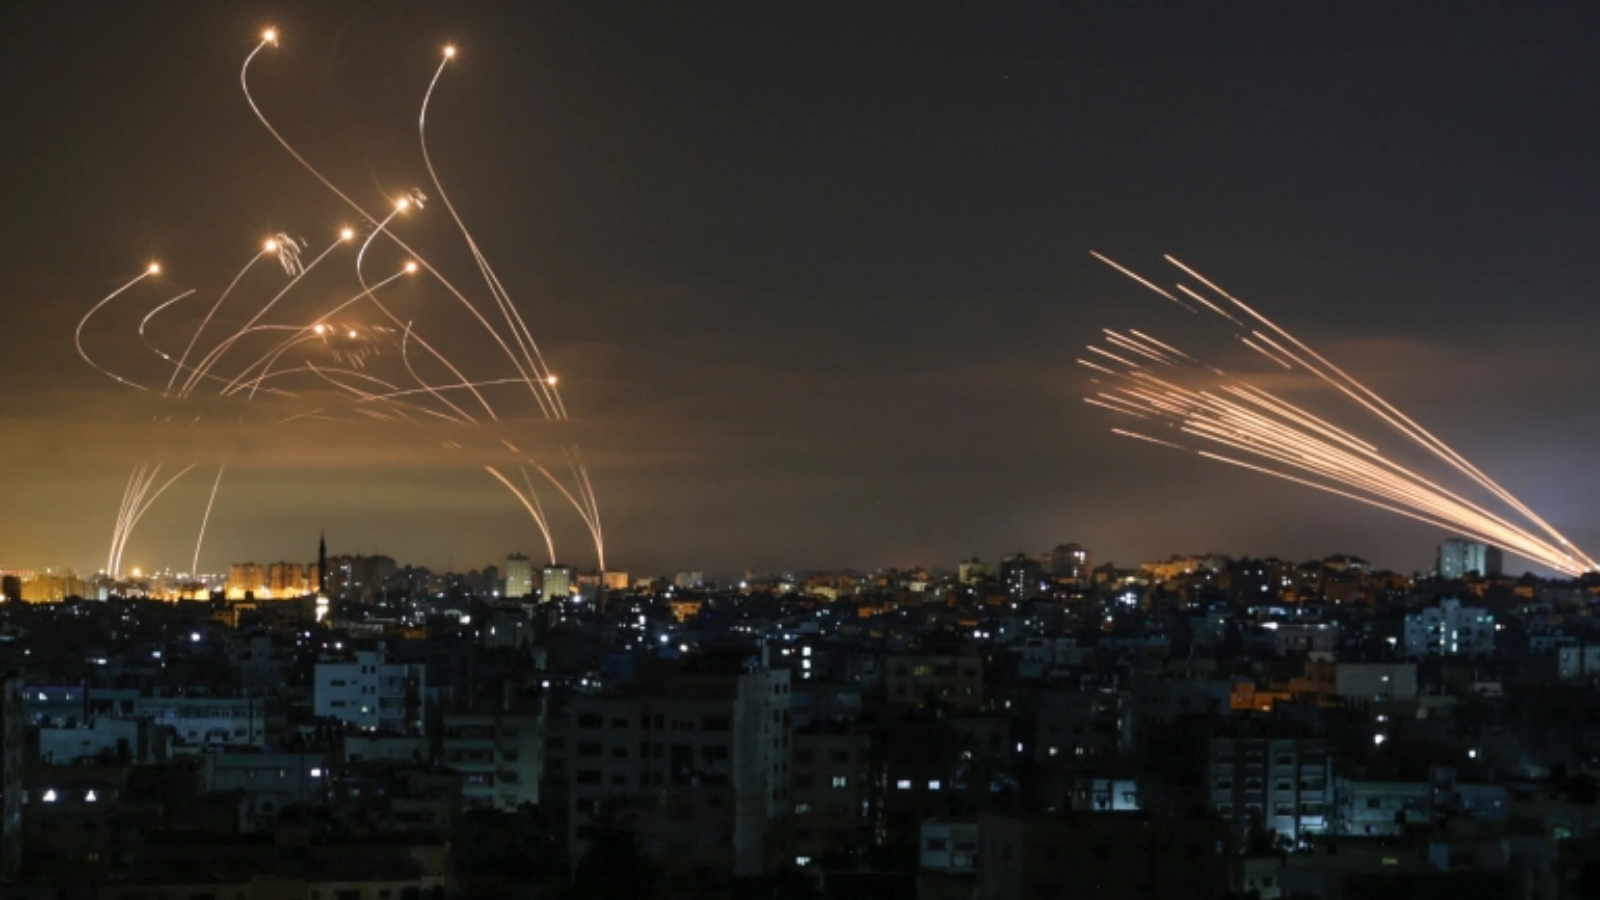 نظام القبة الحديدية الإسرائيلي المضاد للصواريخ يعترض صواريخ أطلقت من قطاع غزة باتجاه إسرائيل. في 19 أيار/مايو 2021.